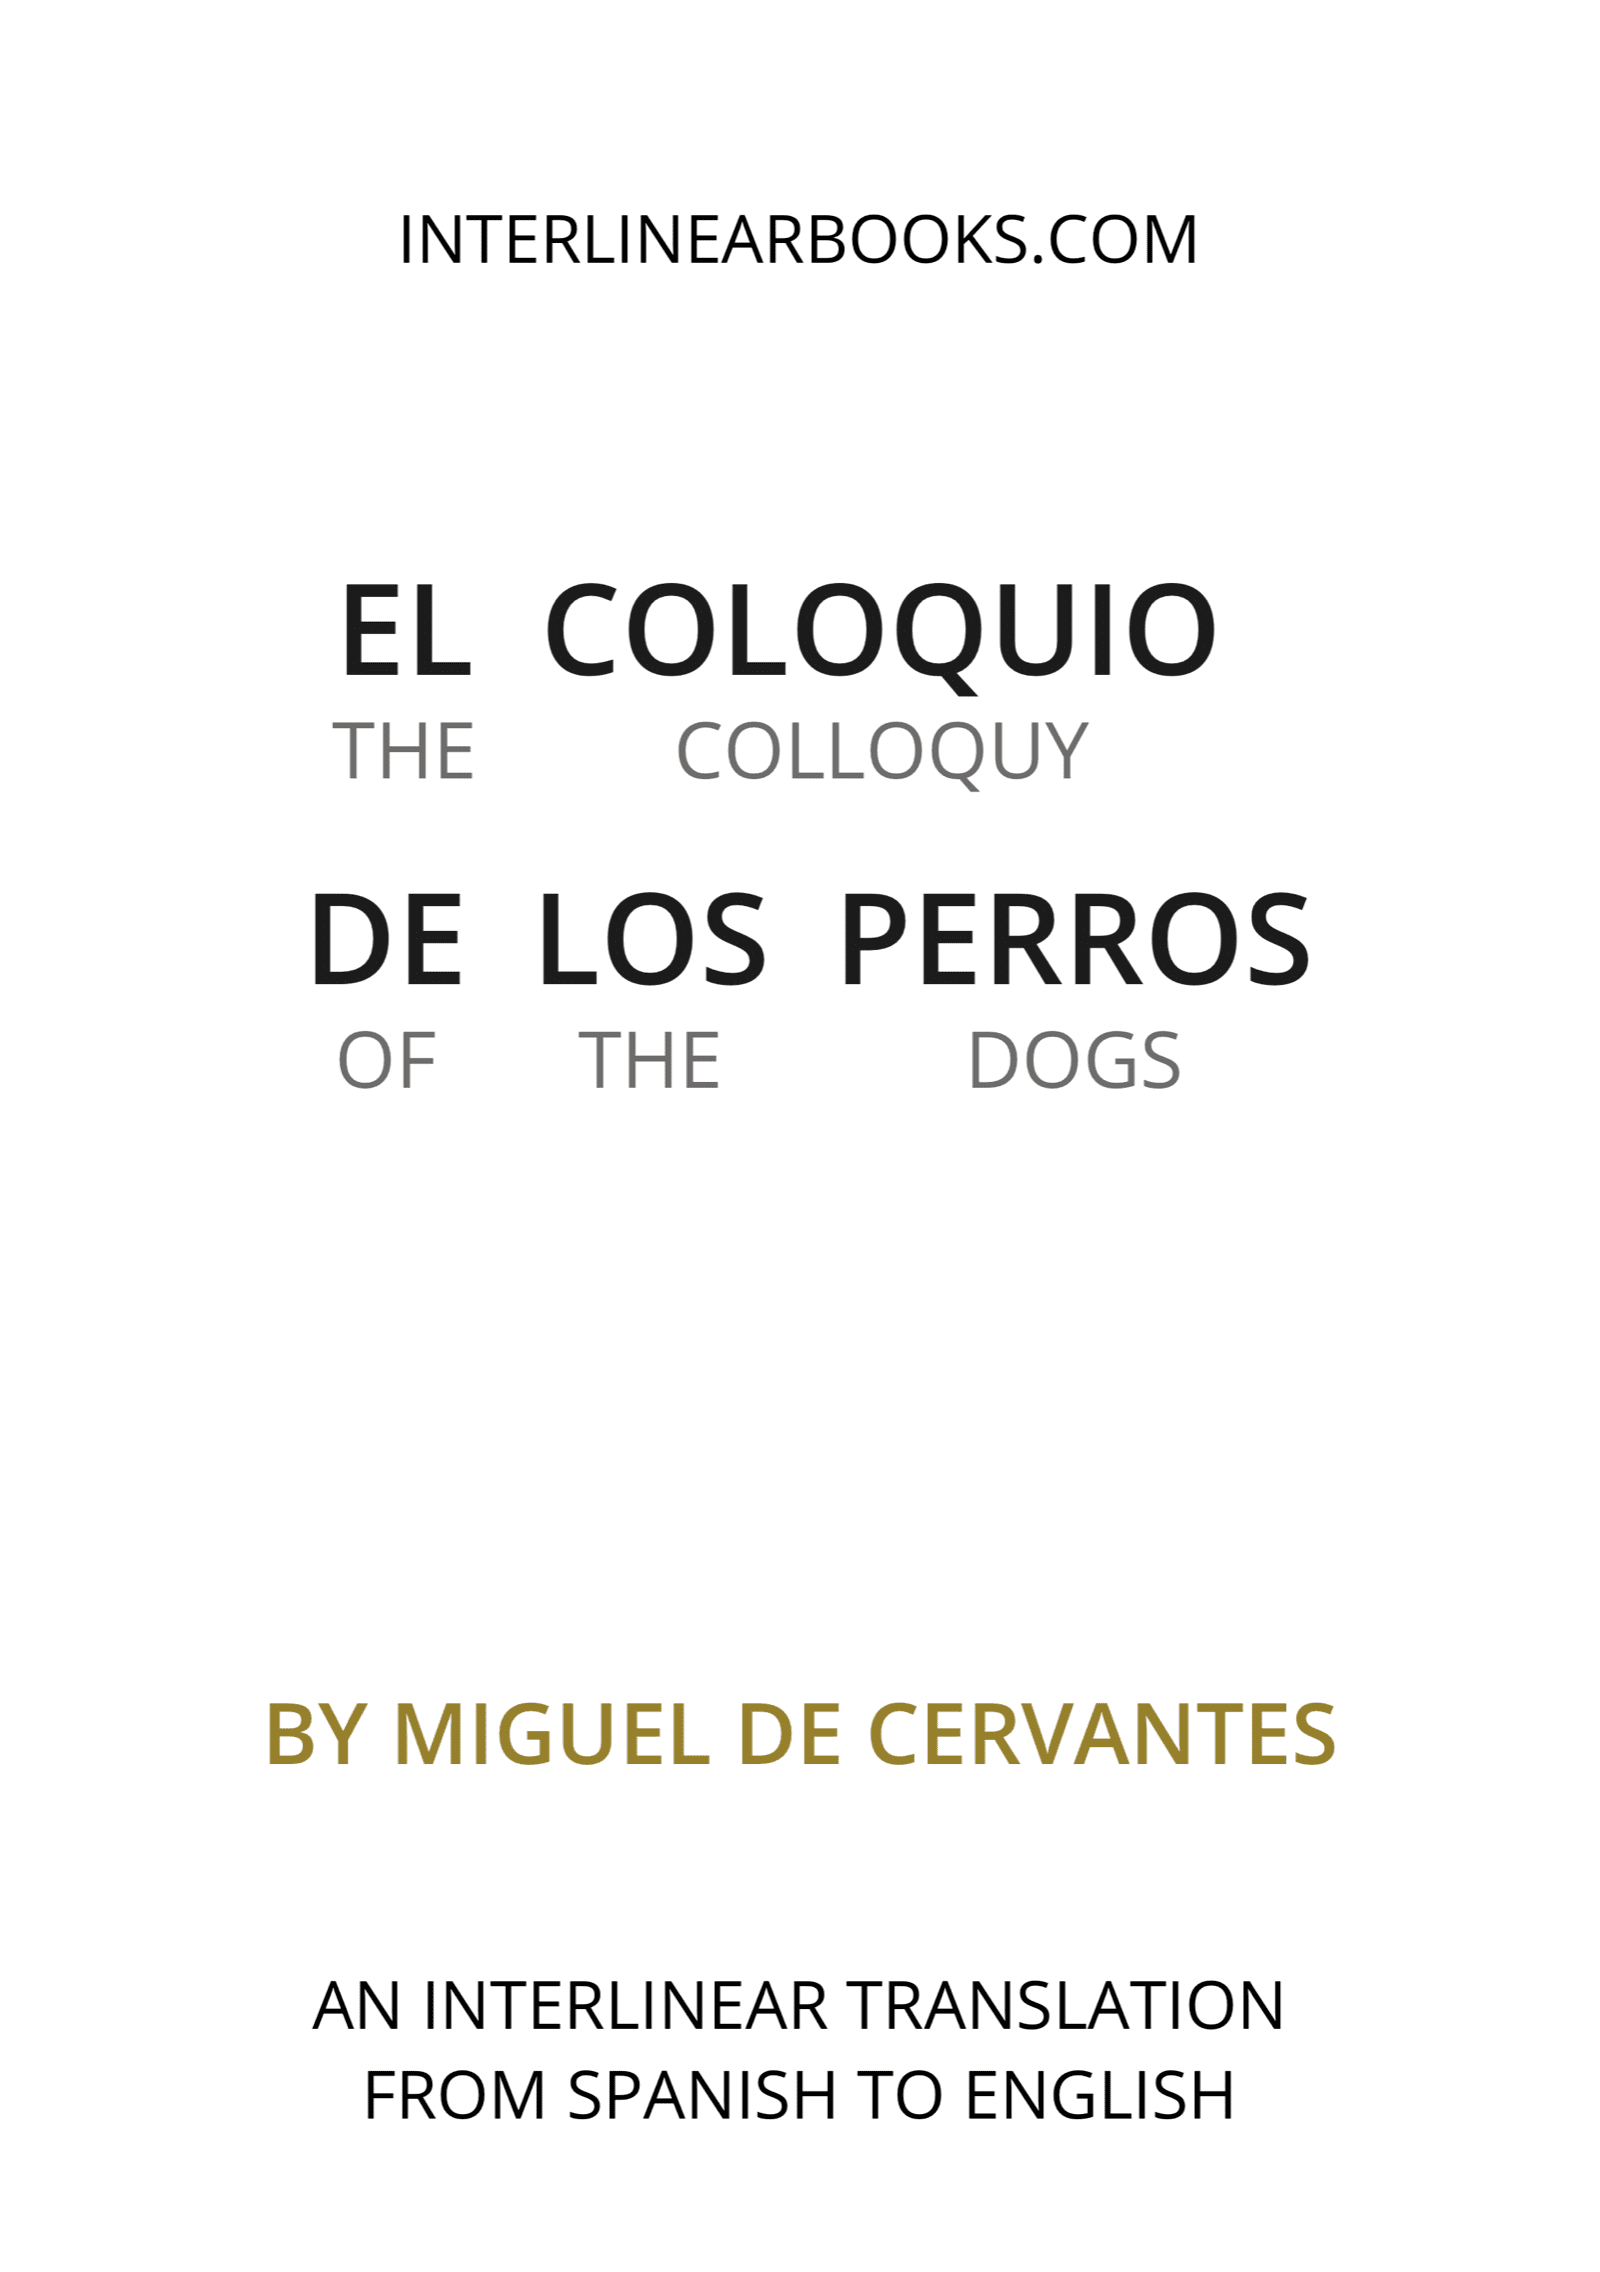 Spanish book: El coloquio de los perros / The Colloquy of the Dogs